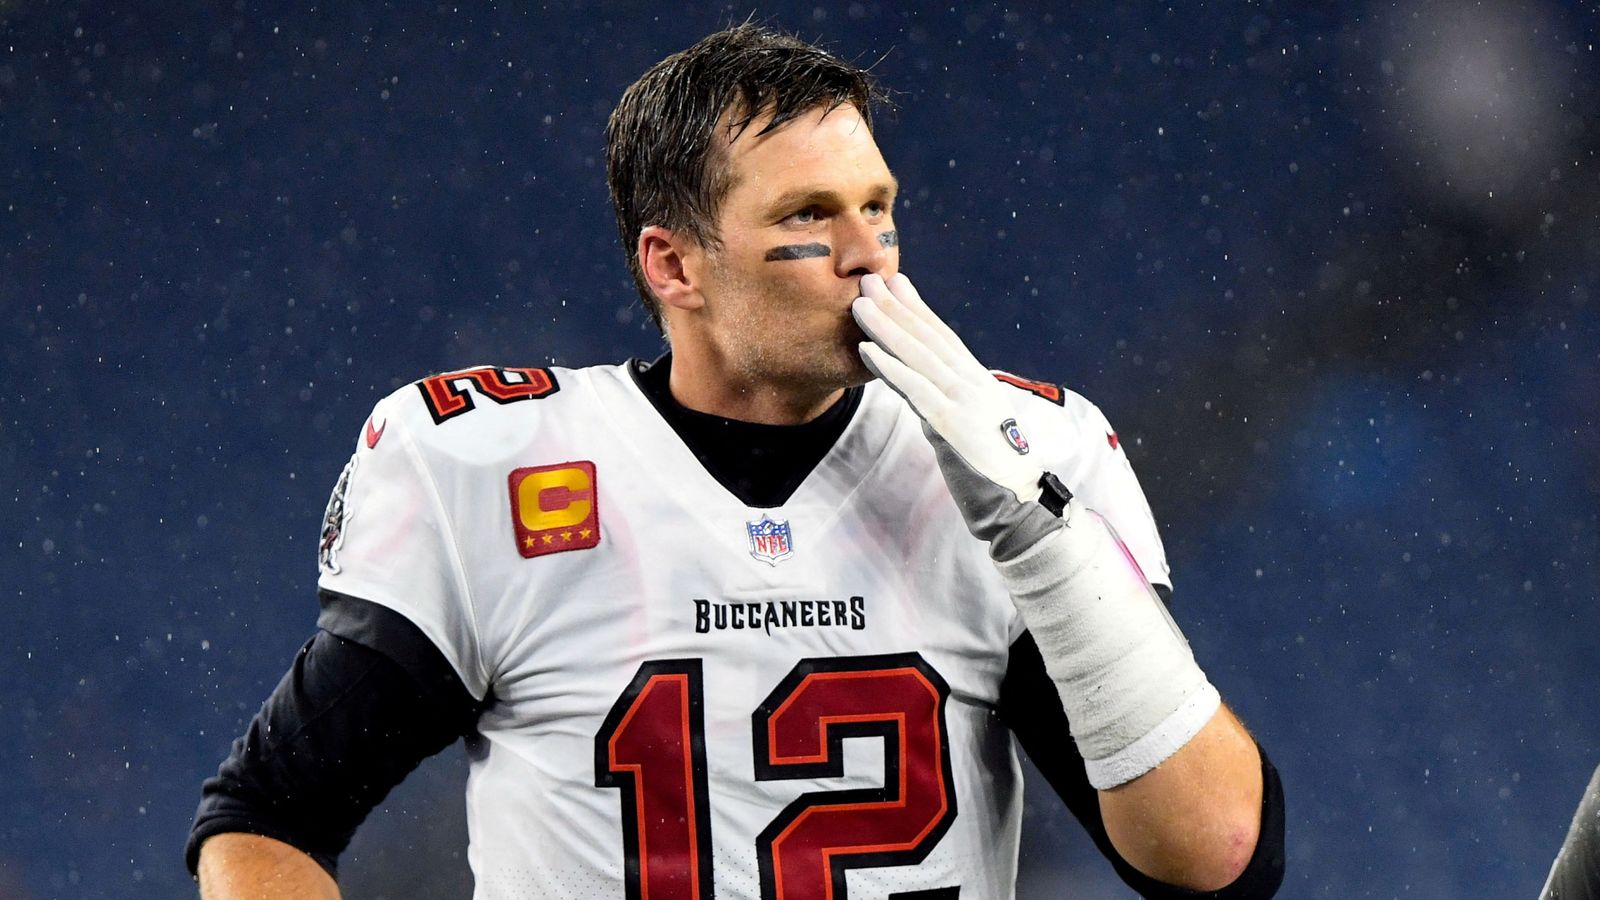 Tom Brady Legendary NFL quarterback confirms retirement US News